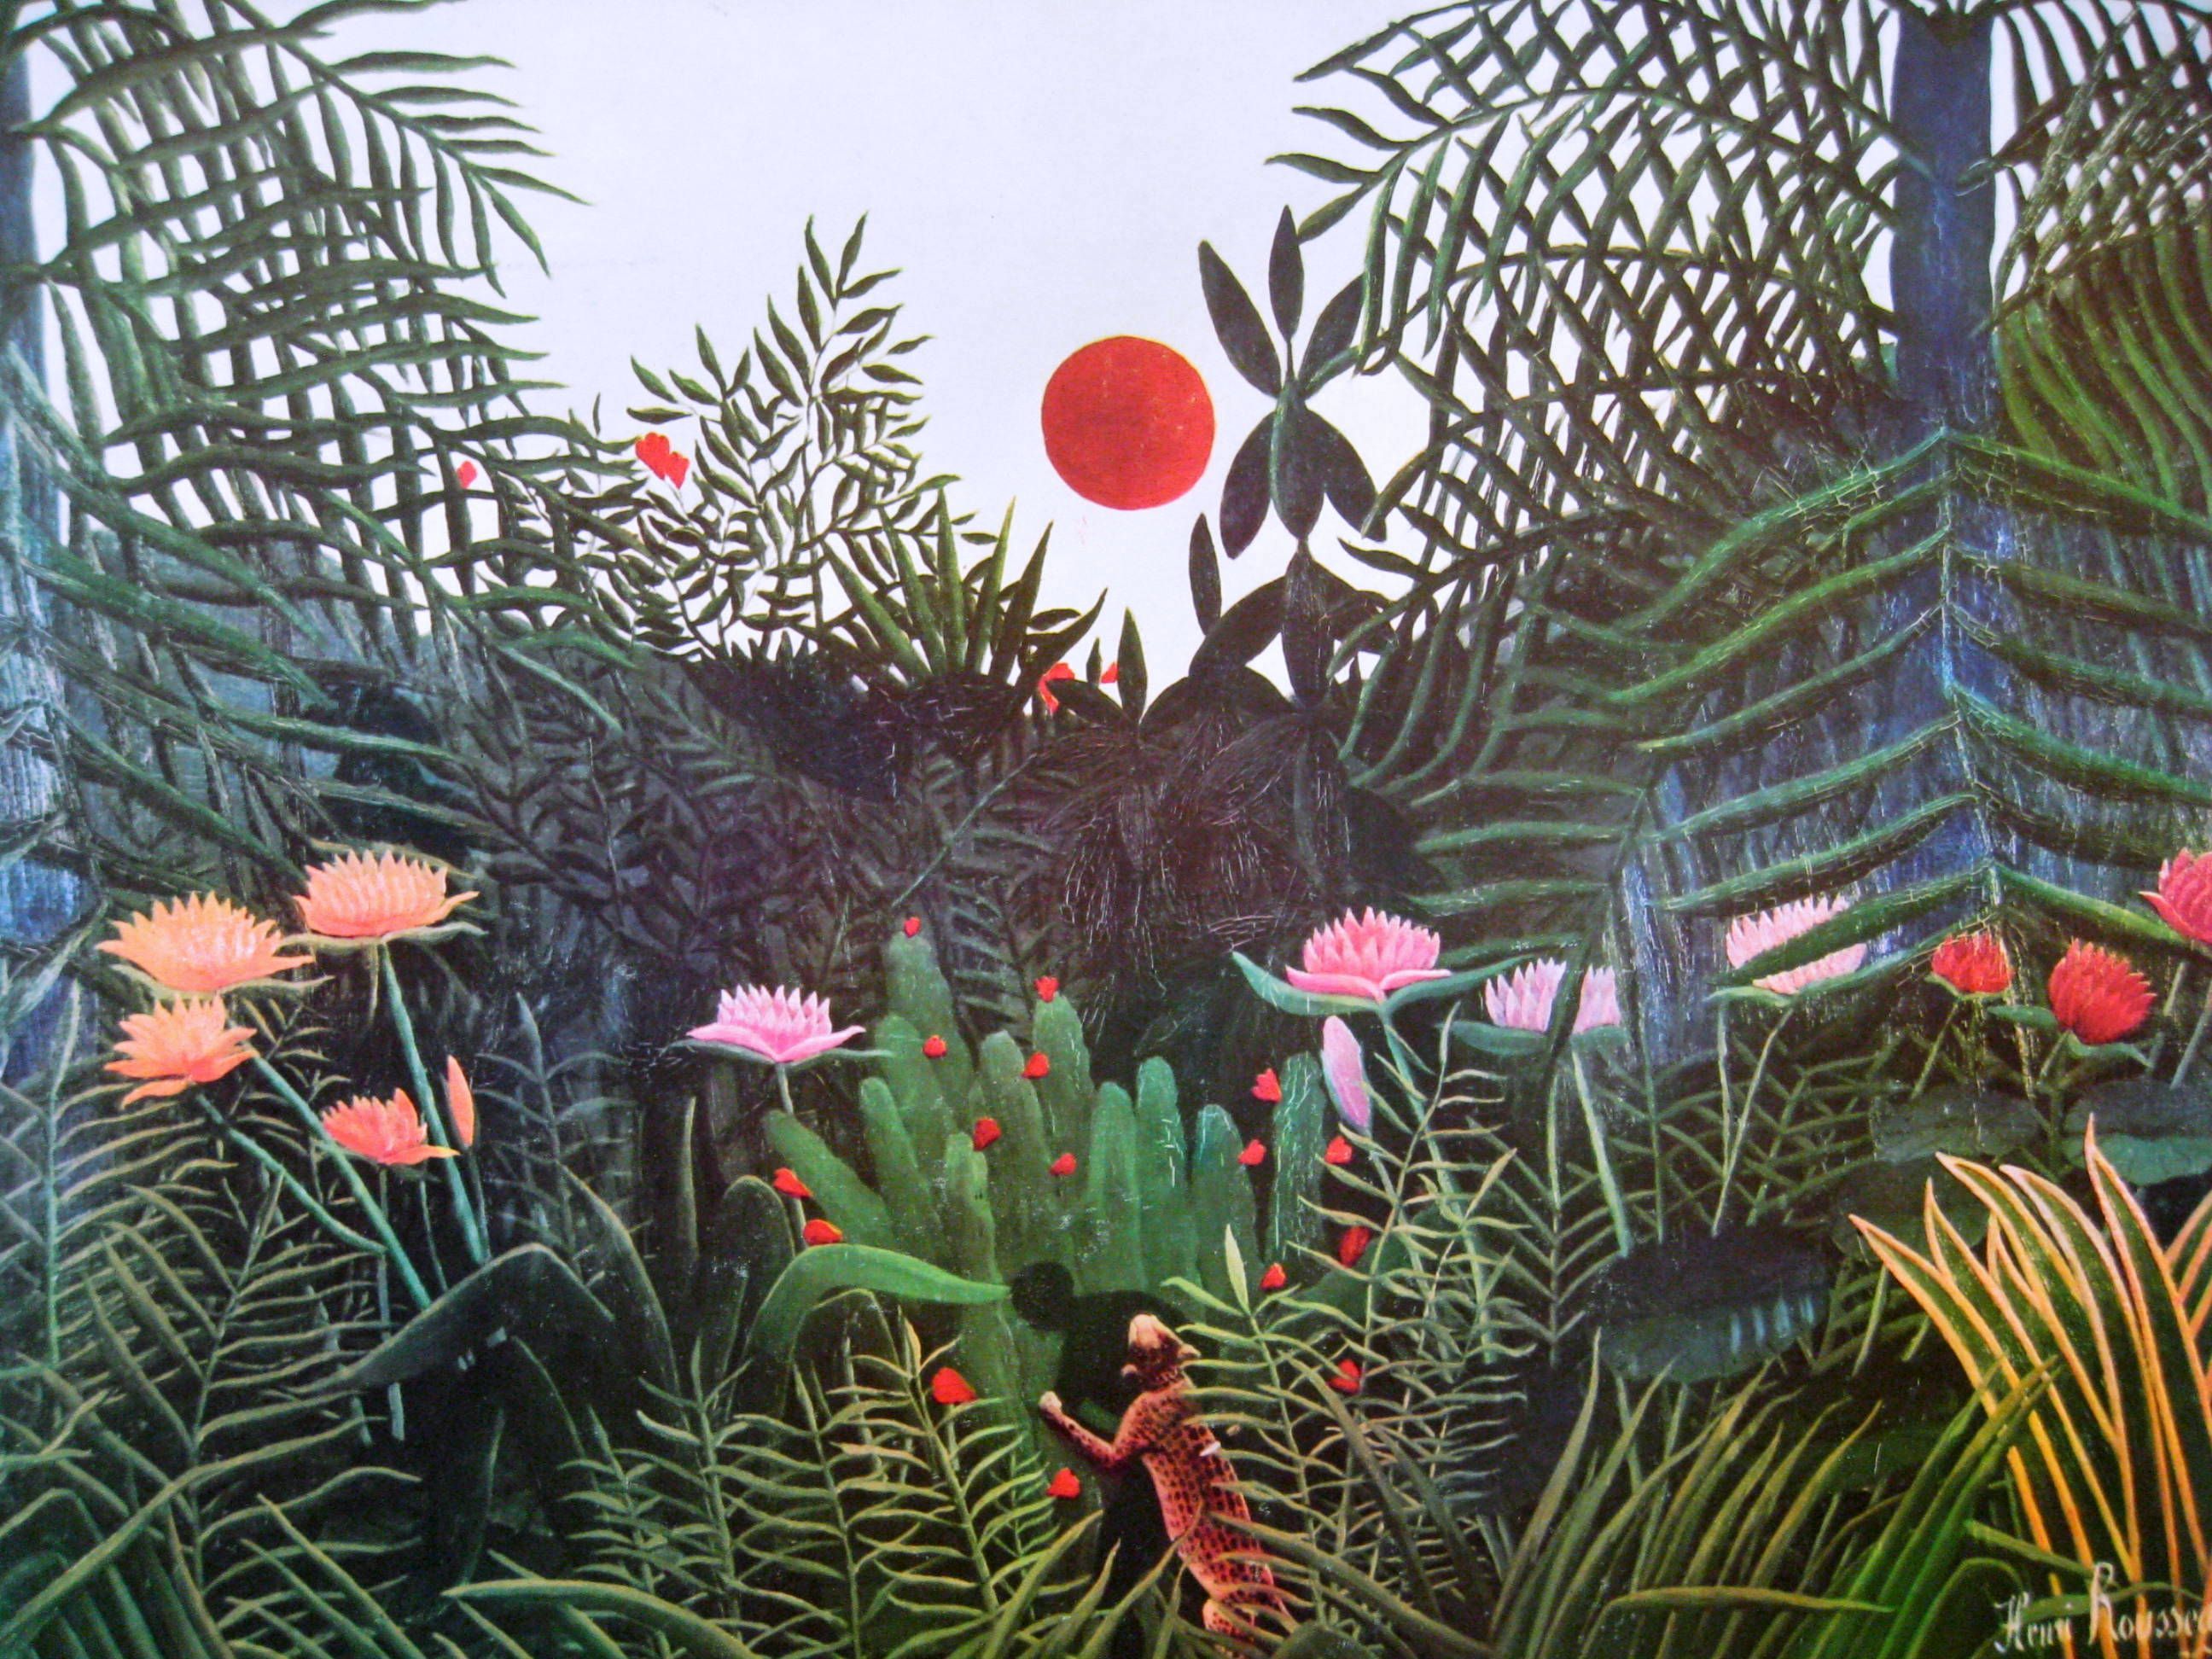 Henri rousseau, Tropical art, Painting.com